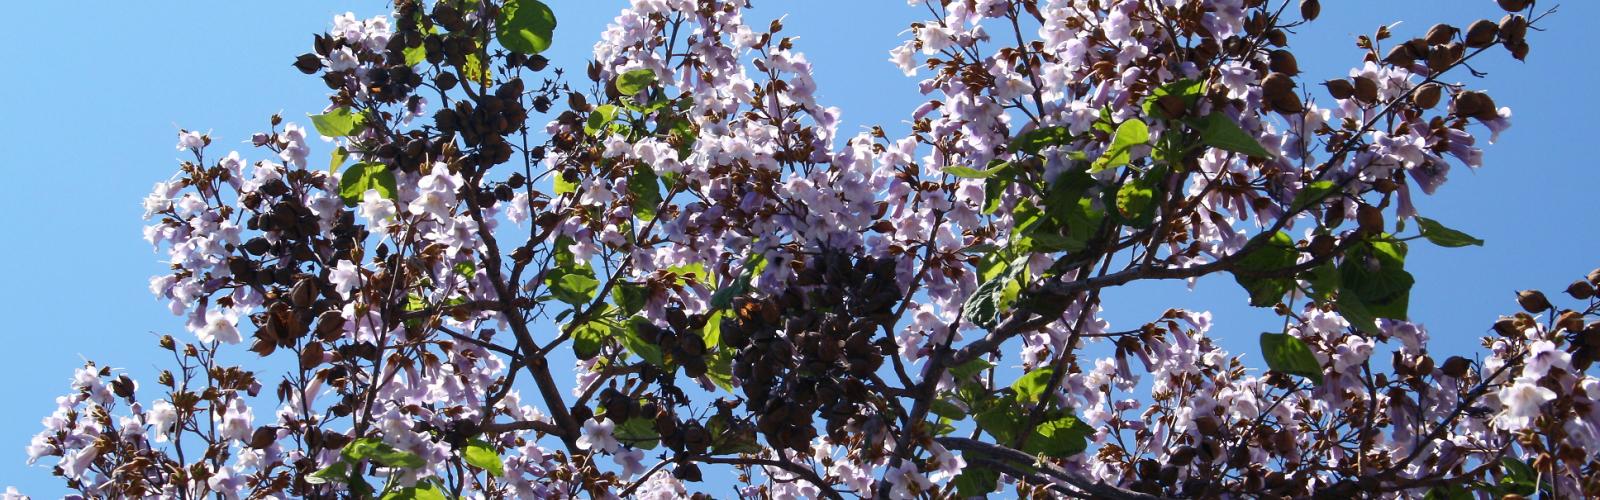 Paulownia tomentosa : Guide complet pour cultiver l'arbre impérial majestueux